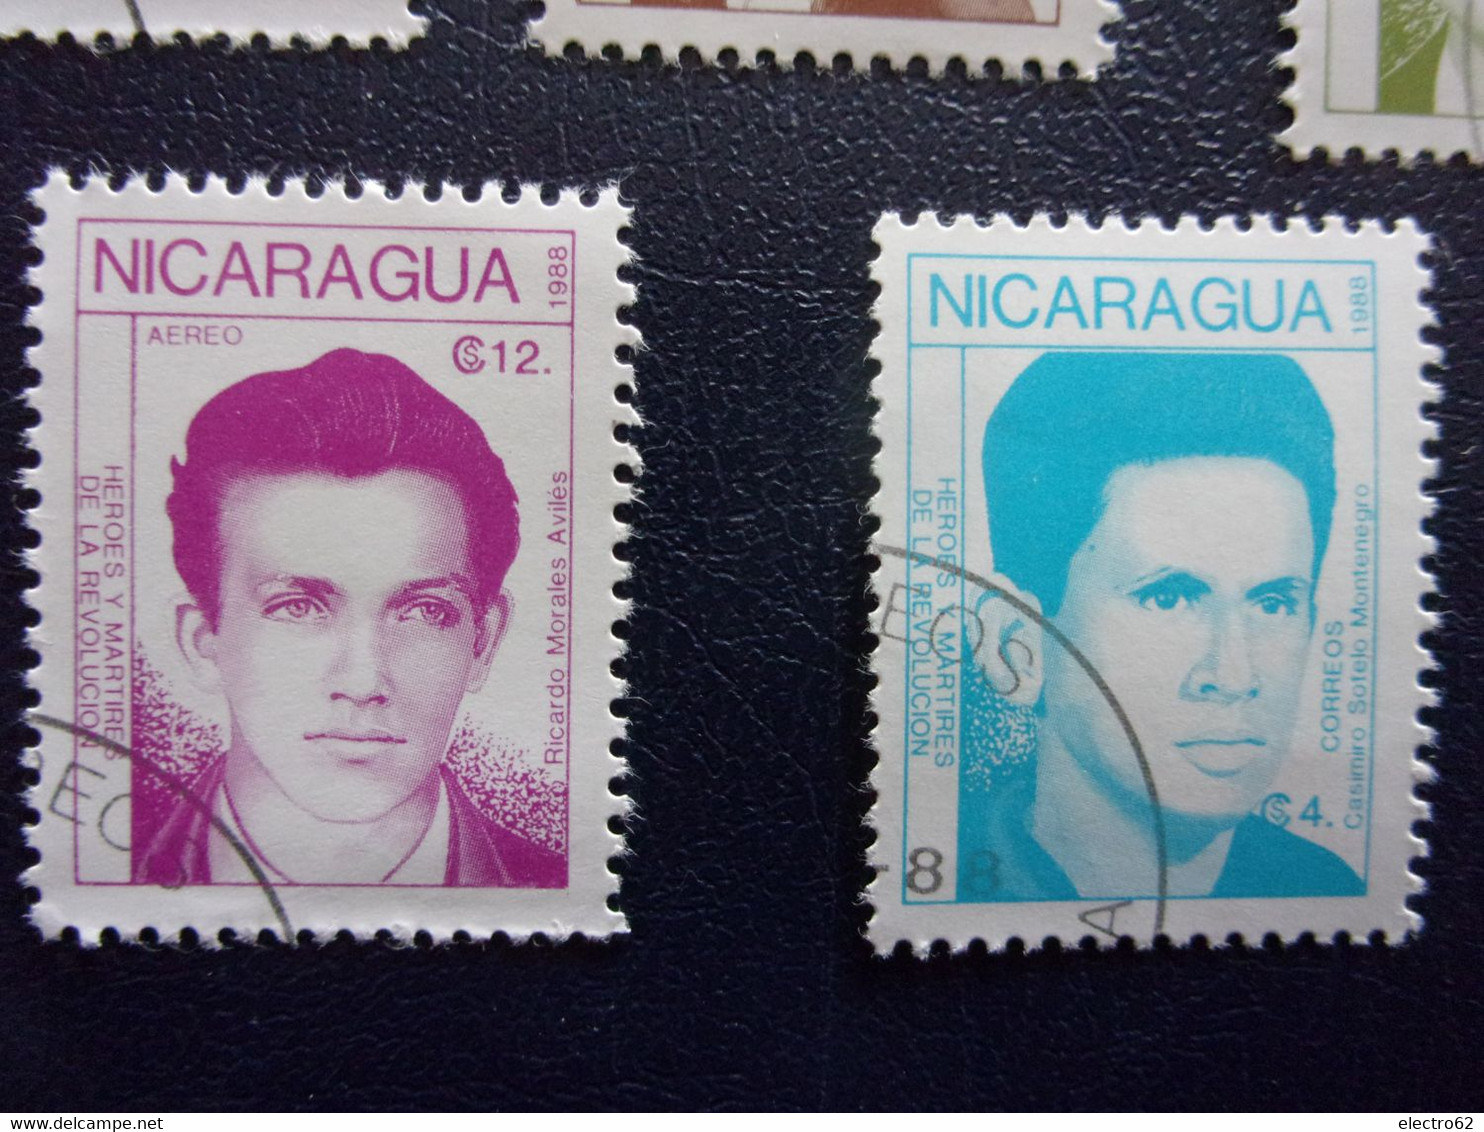 Nicaragua 1988 héros et martyrs révolution Casimiro Sotelo Ricardo Silvio Pedro Oscar Julio José Edouardo